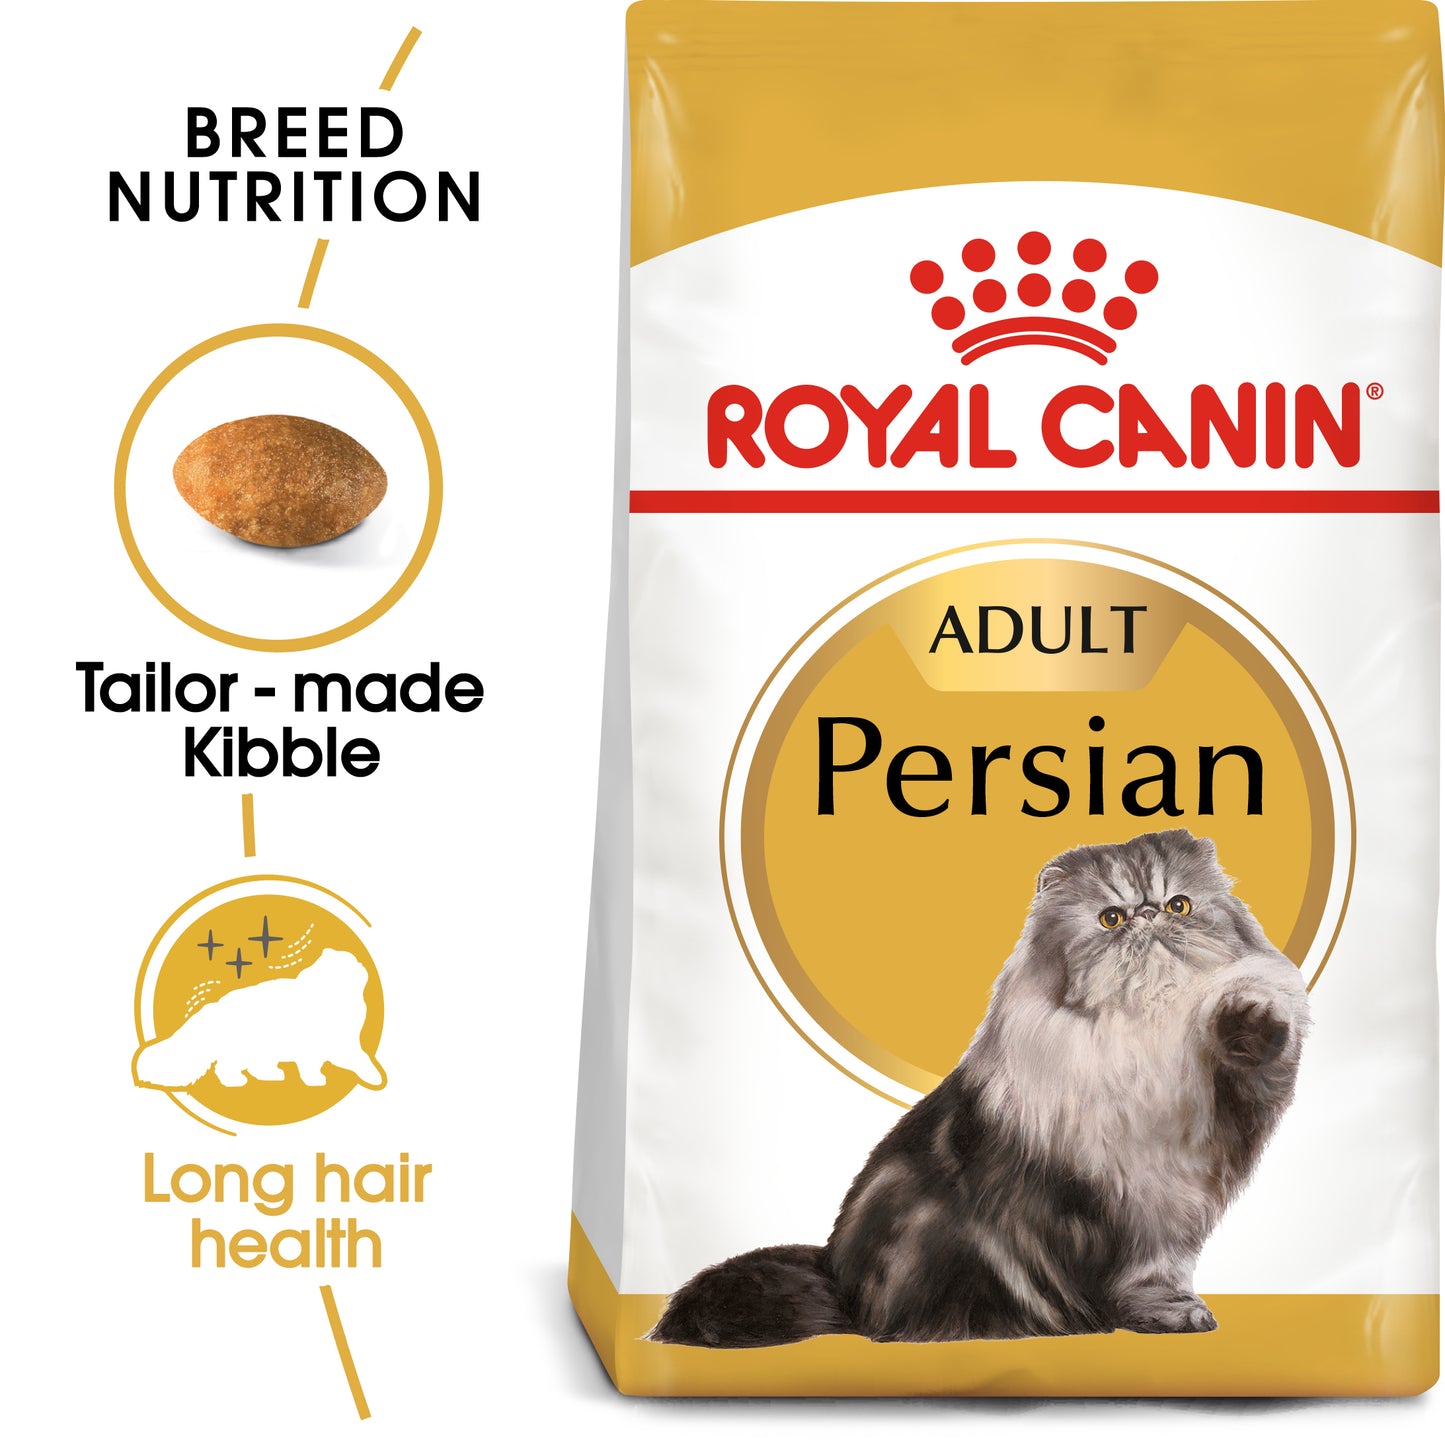 Royal Canin Persian Dry Cat Food